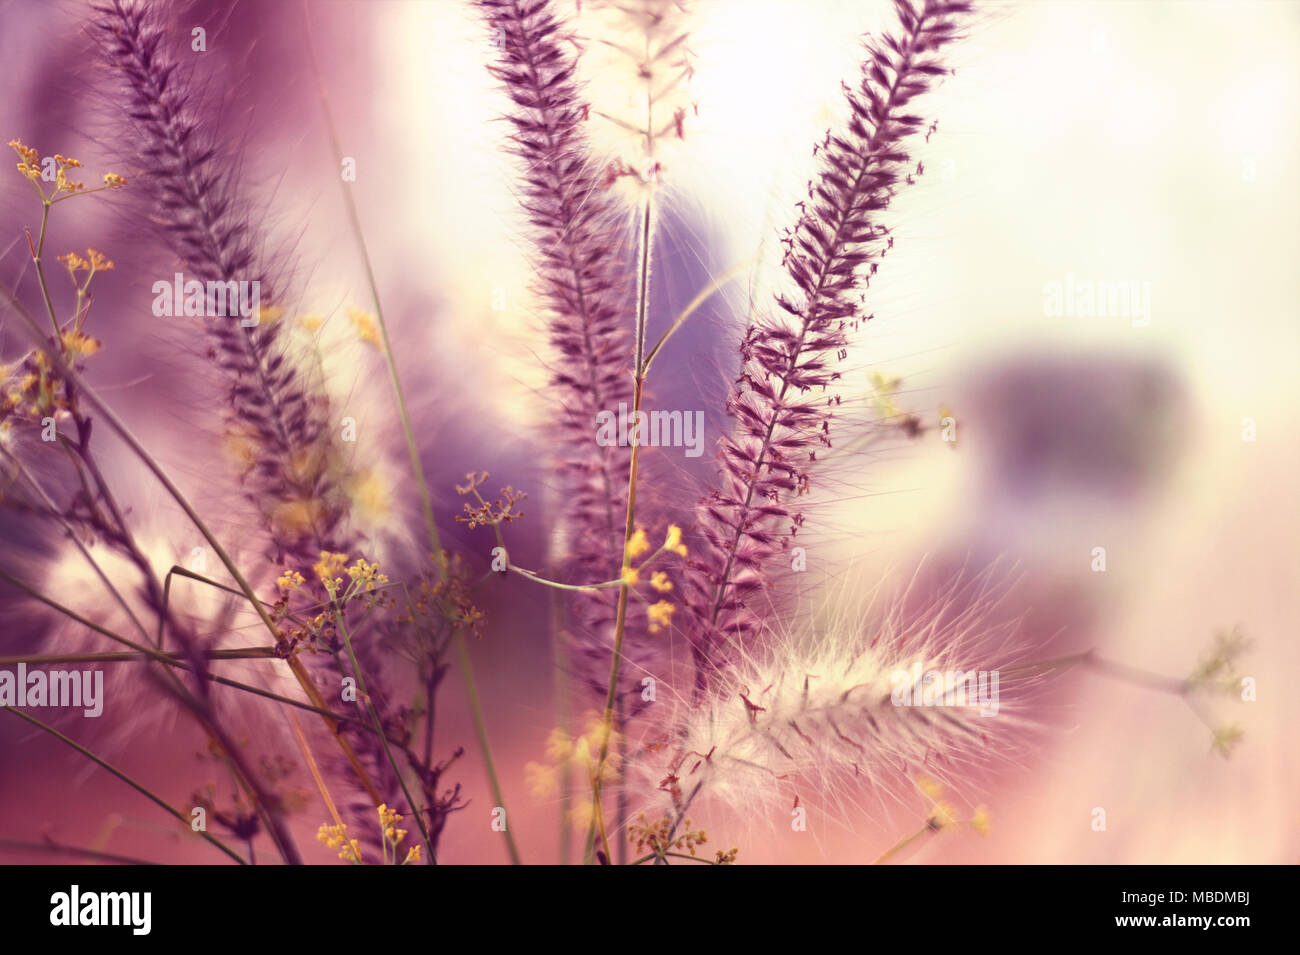 Wilde Gräser, rosa Gräser in einem Feld mit Blur und Kopieren. Stockfoto